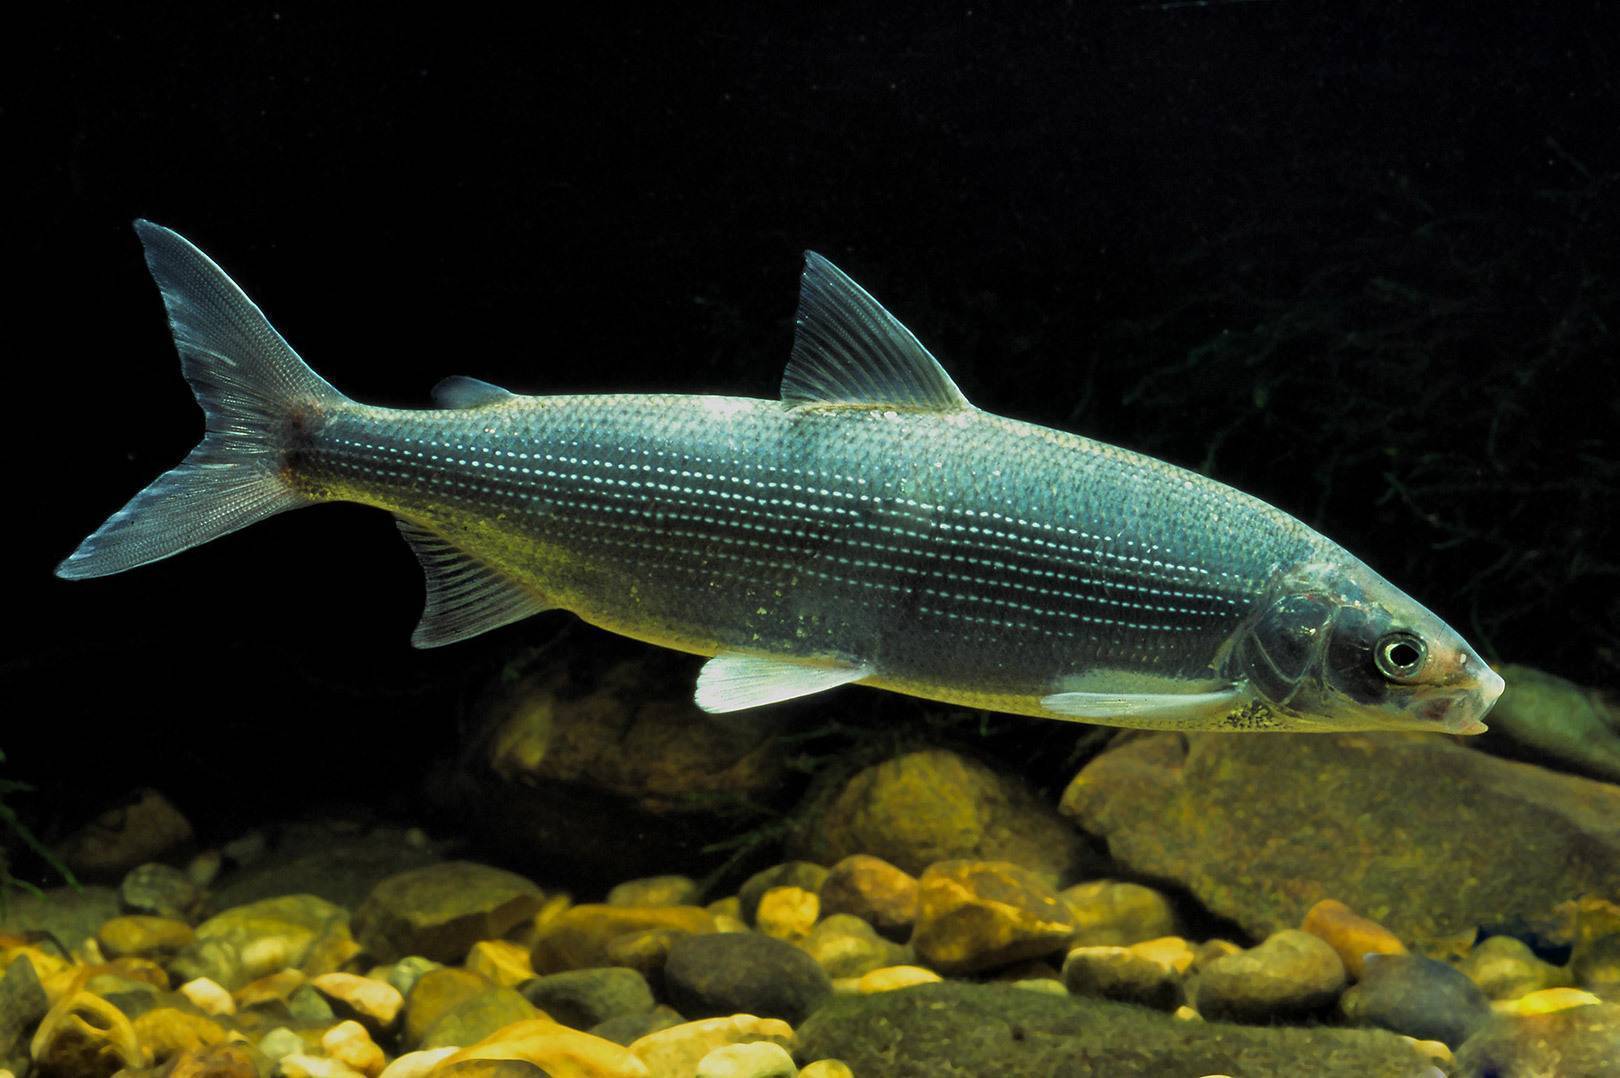 Рыба сиг: описание, виды и нерест. где водится и чем питается сиг